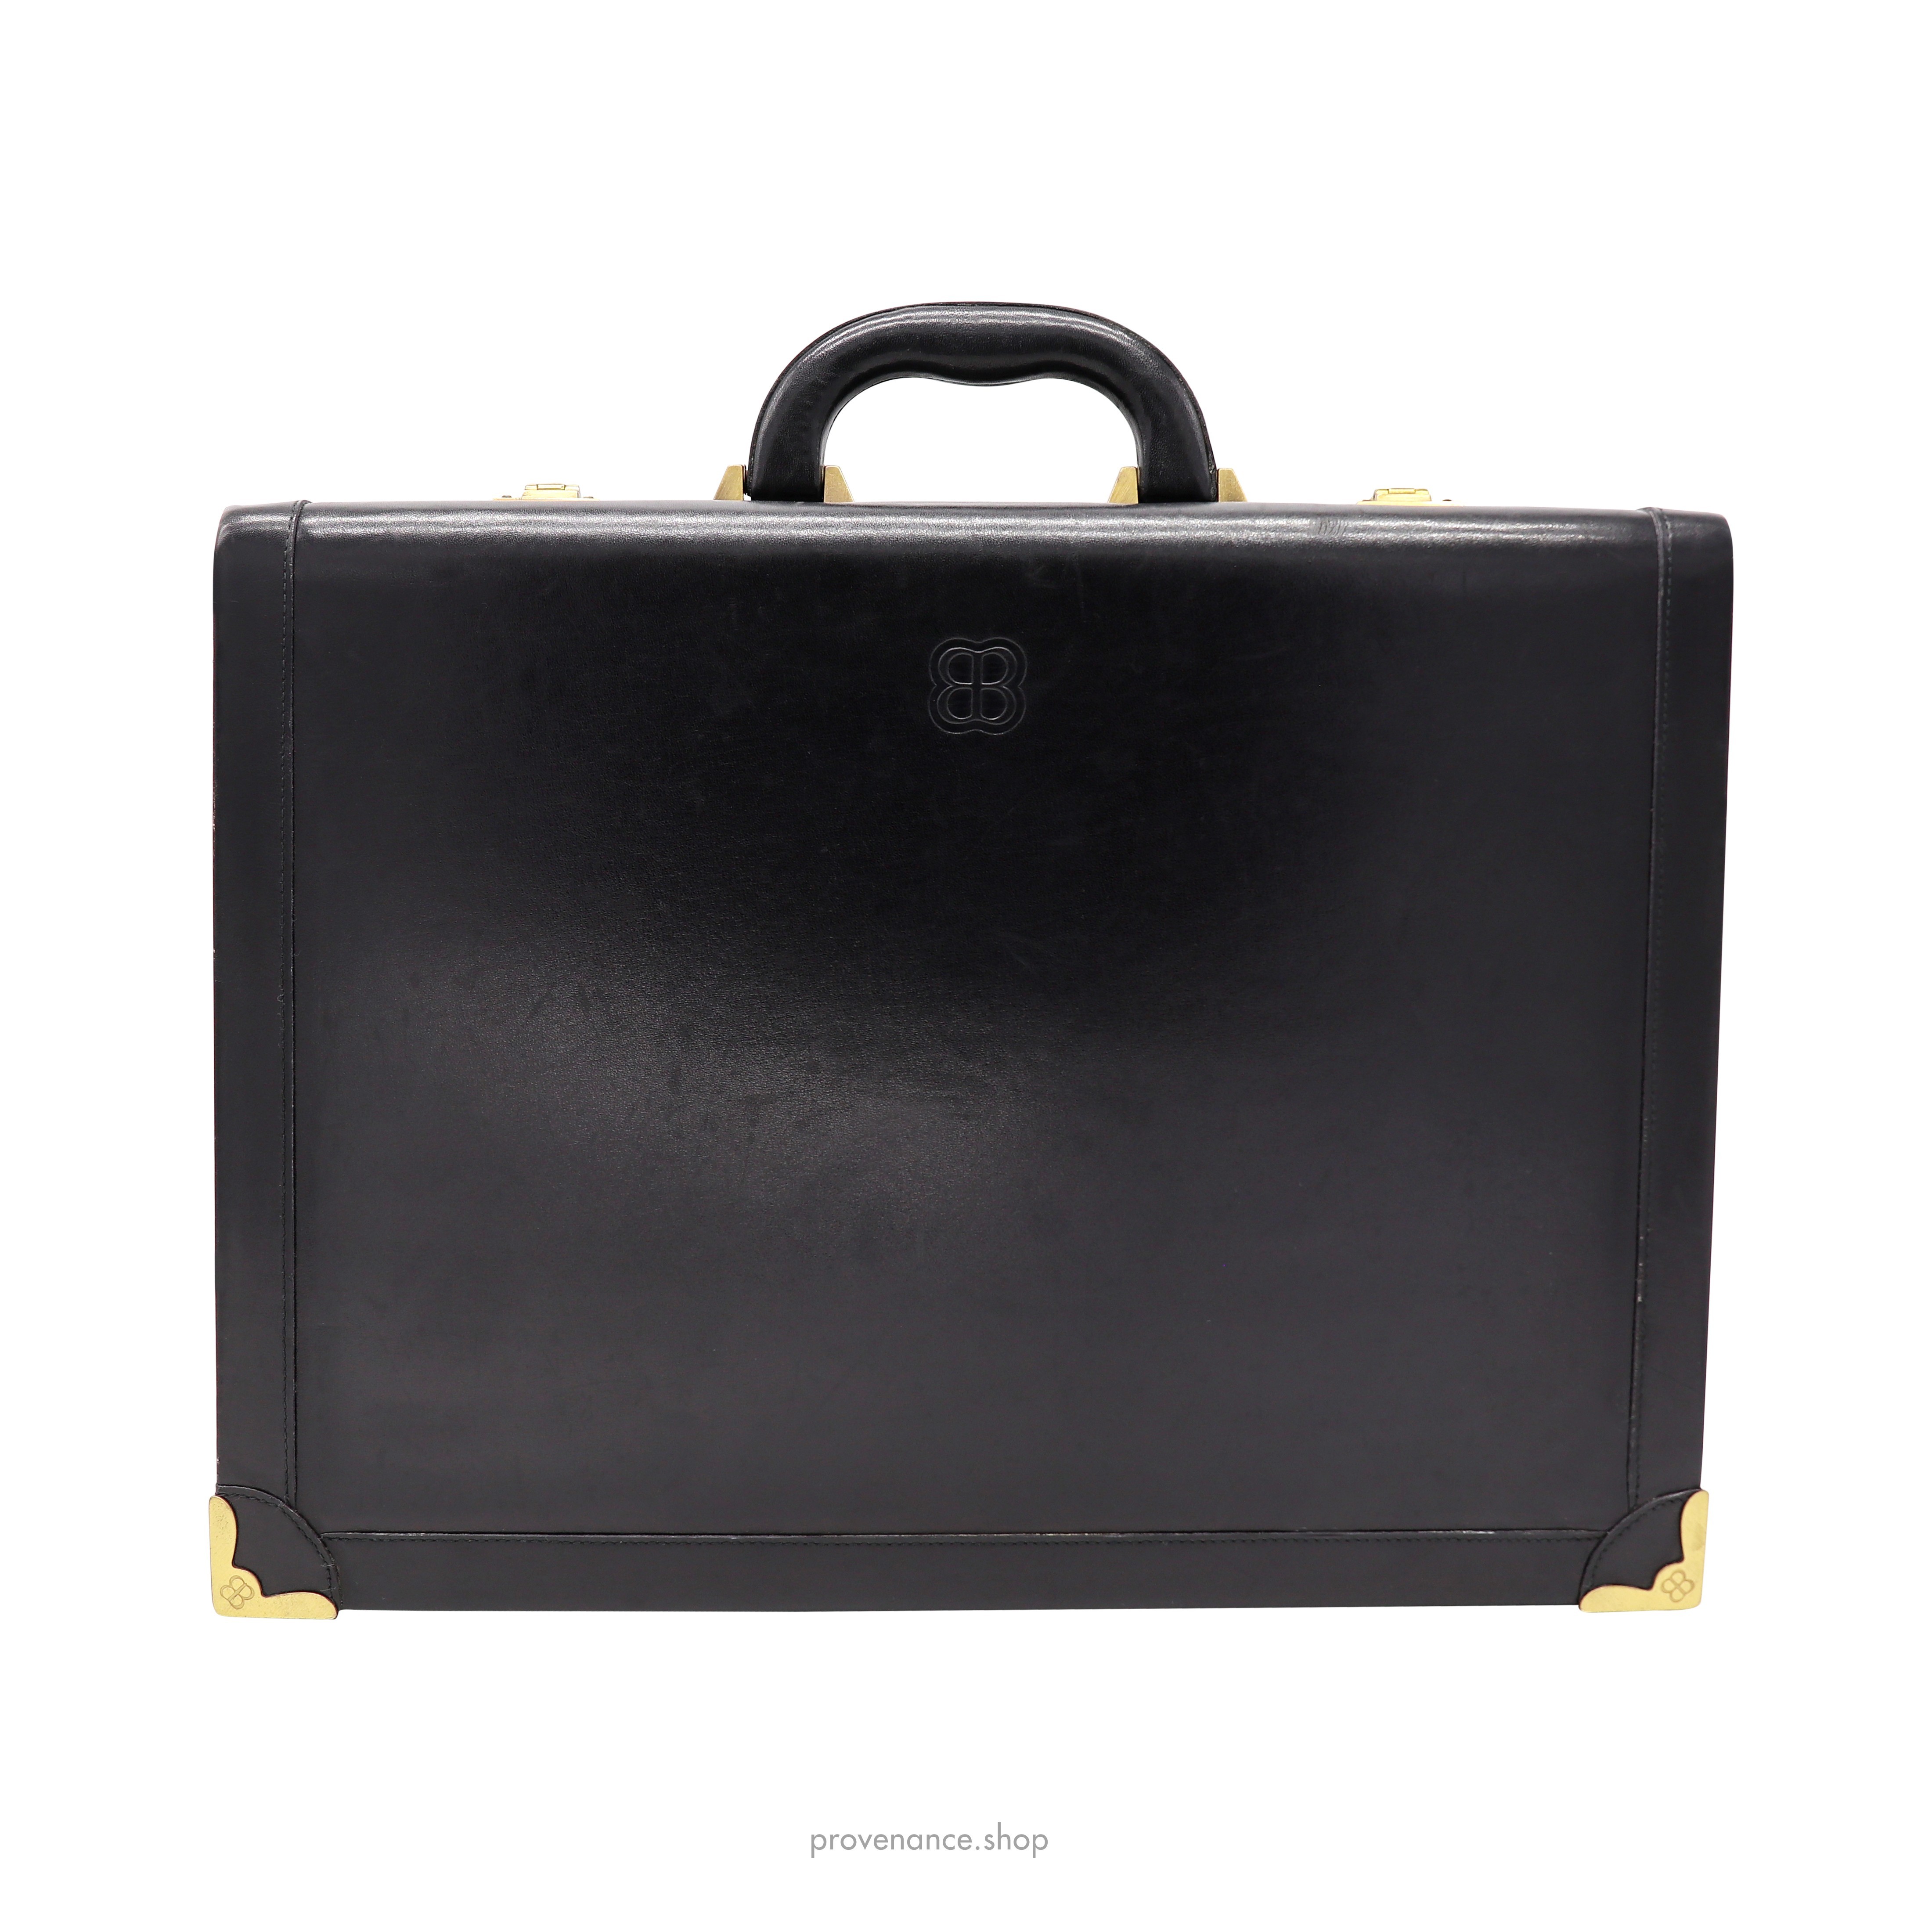 Balenciaga BB Briefcase - Black Leather - 1